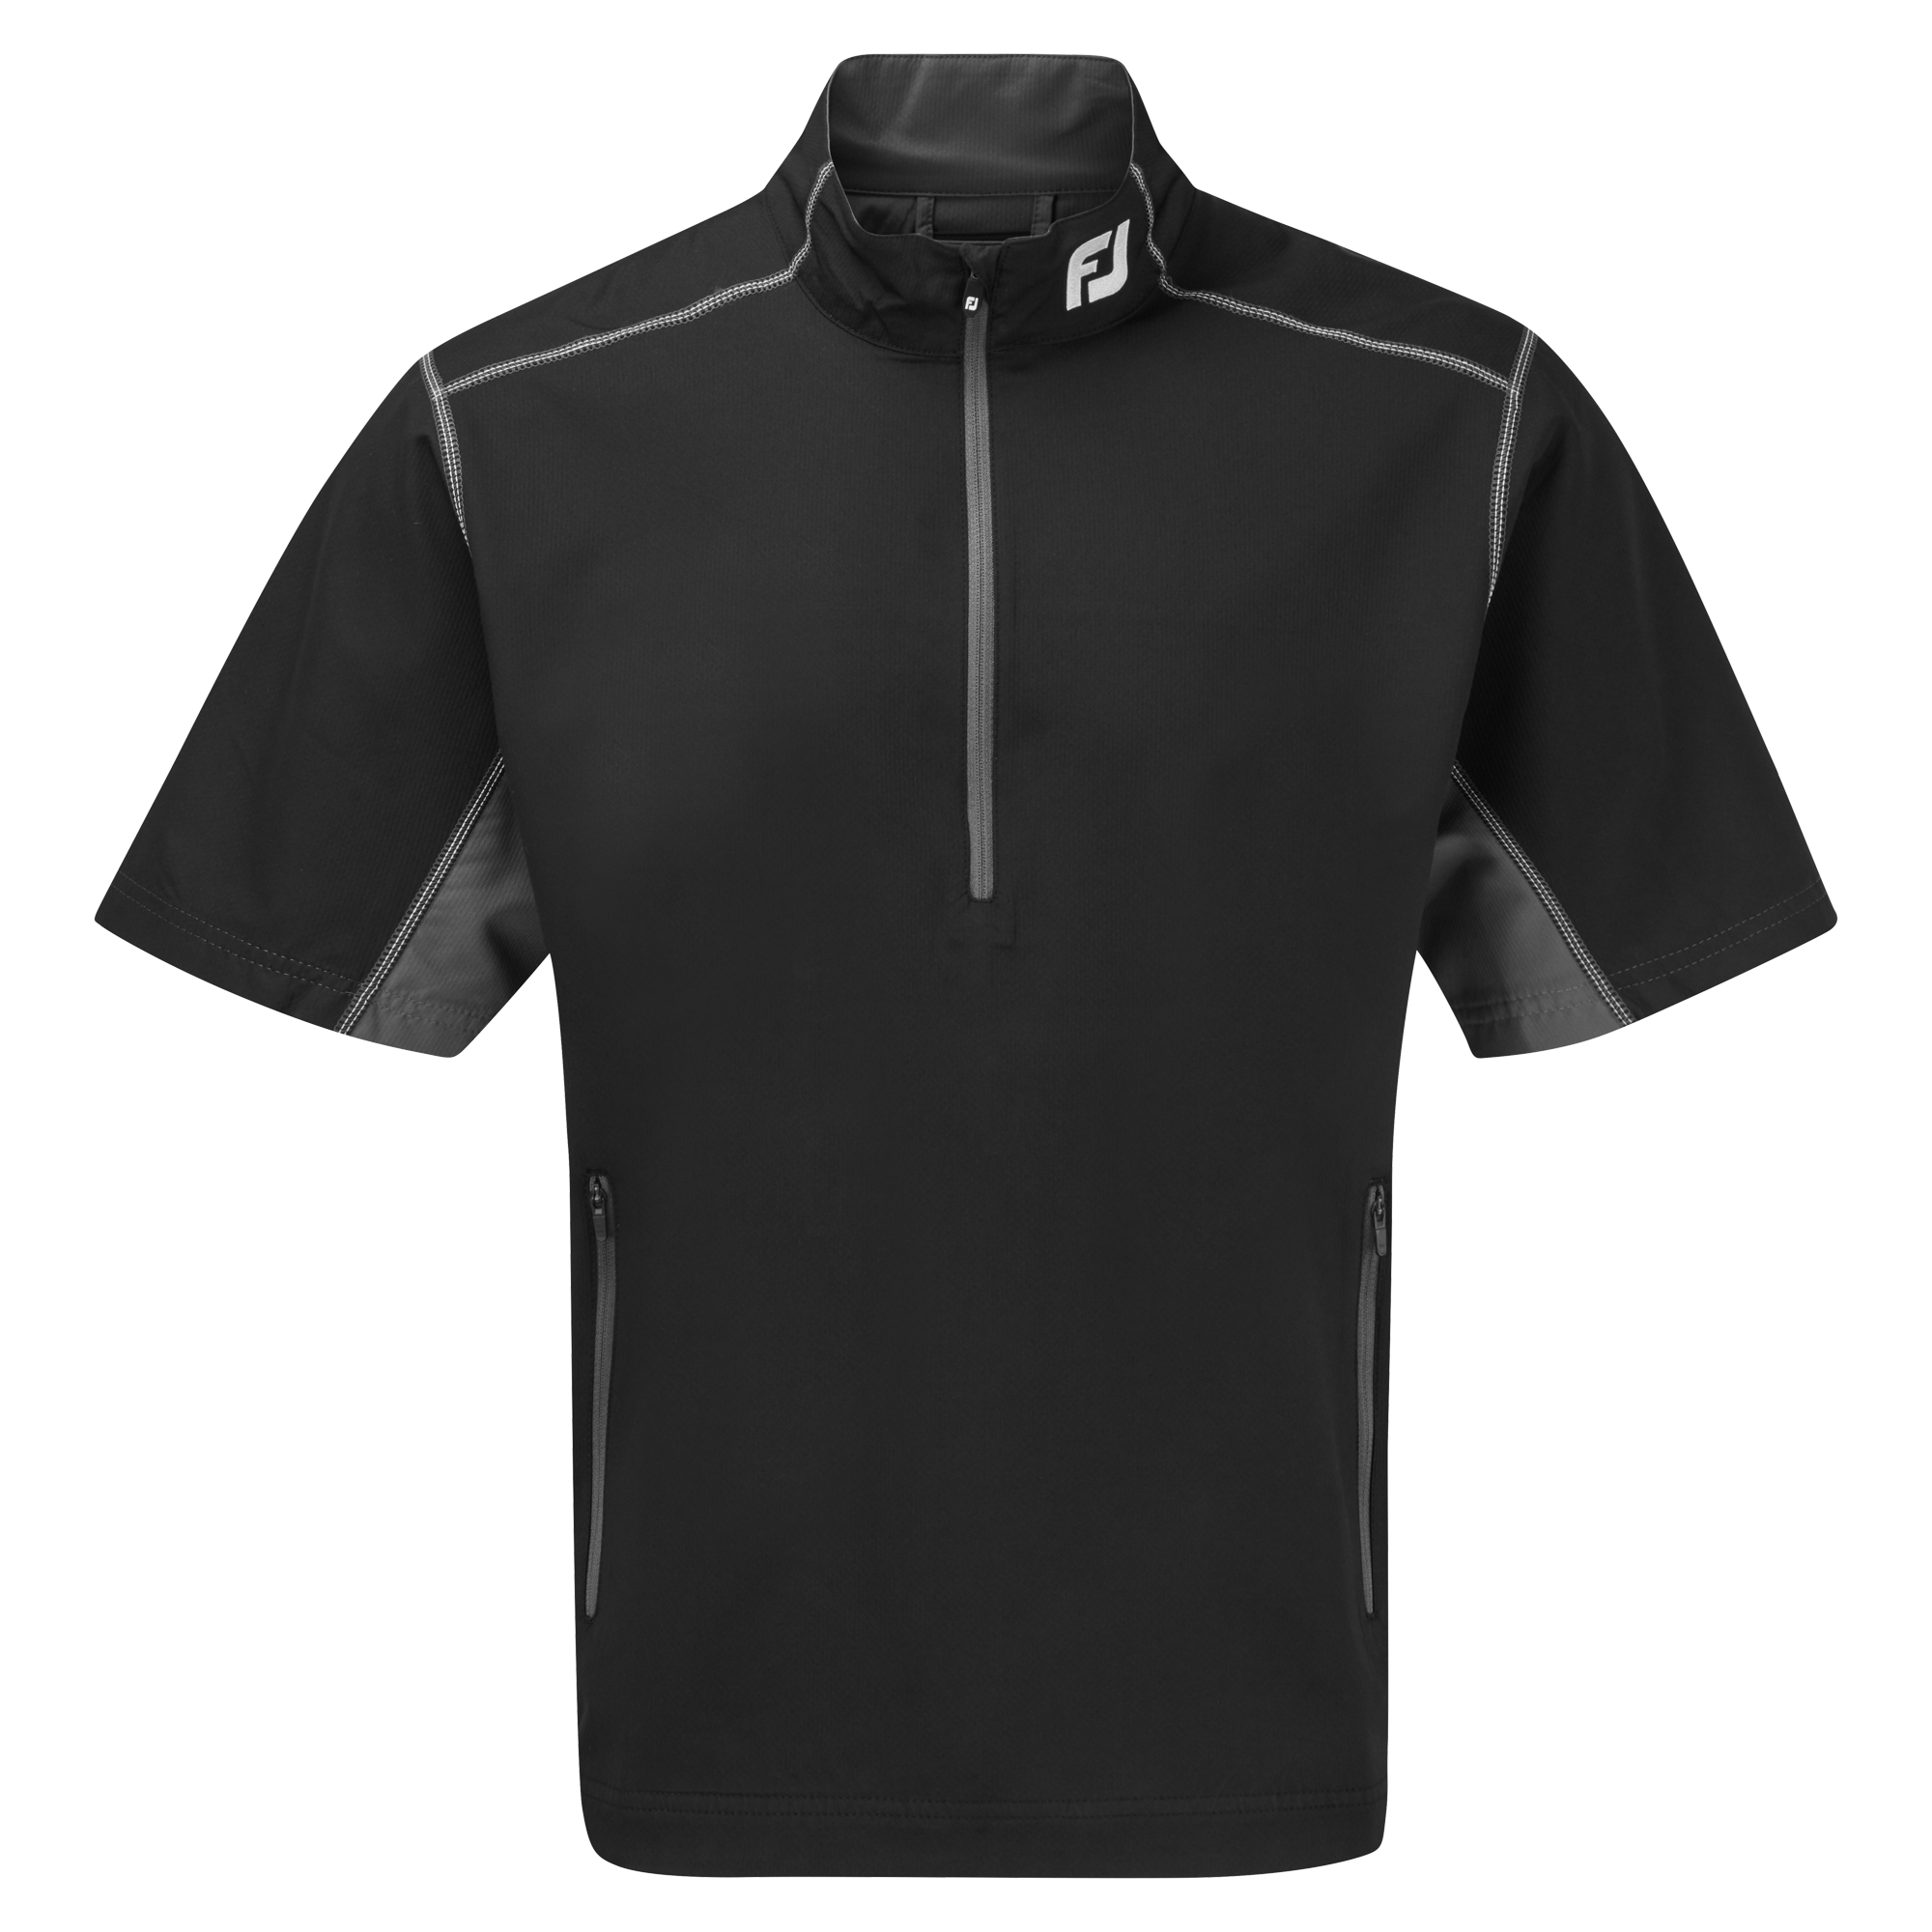 Levně FootJoy Half-Zip S/S Windshirt pánská bunda s krátkým rukávem, černá